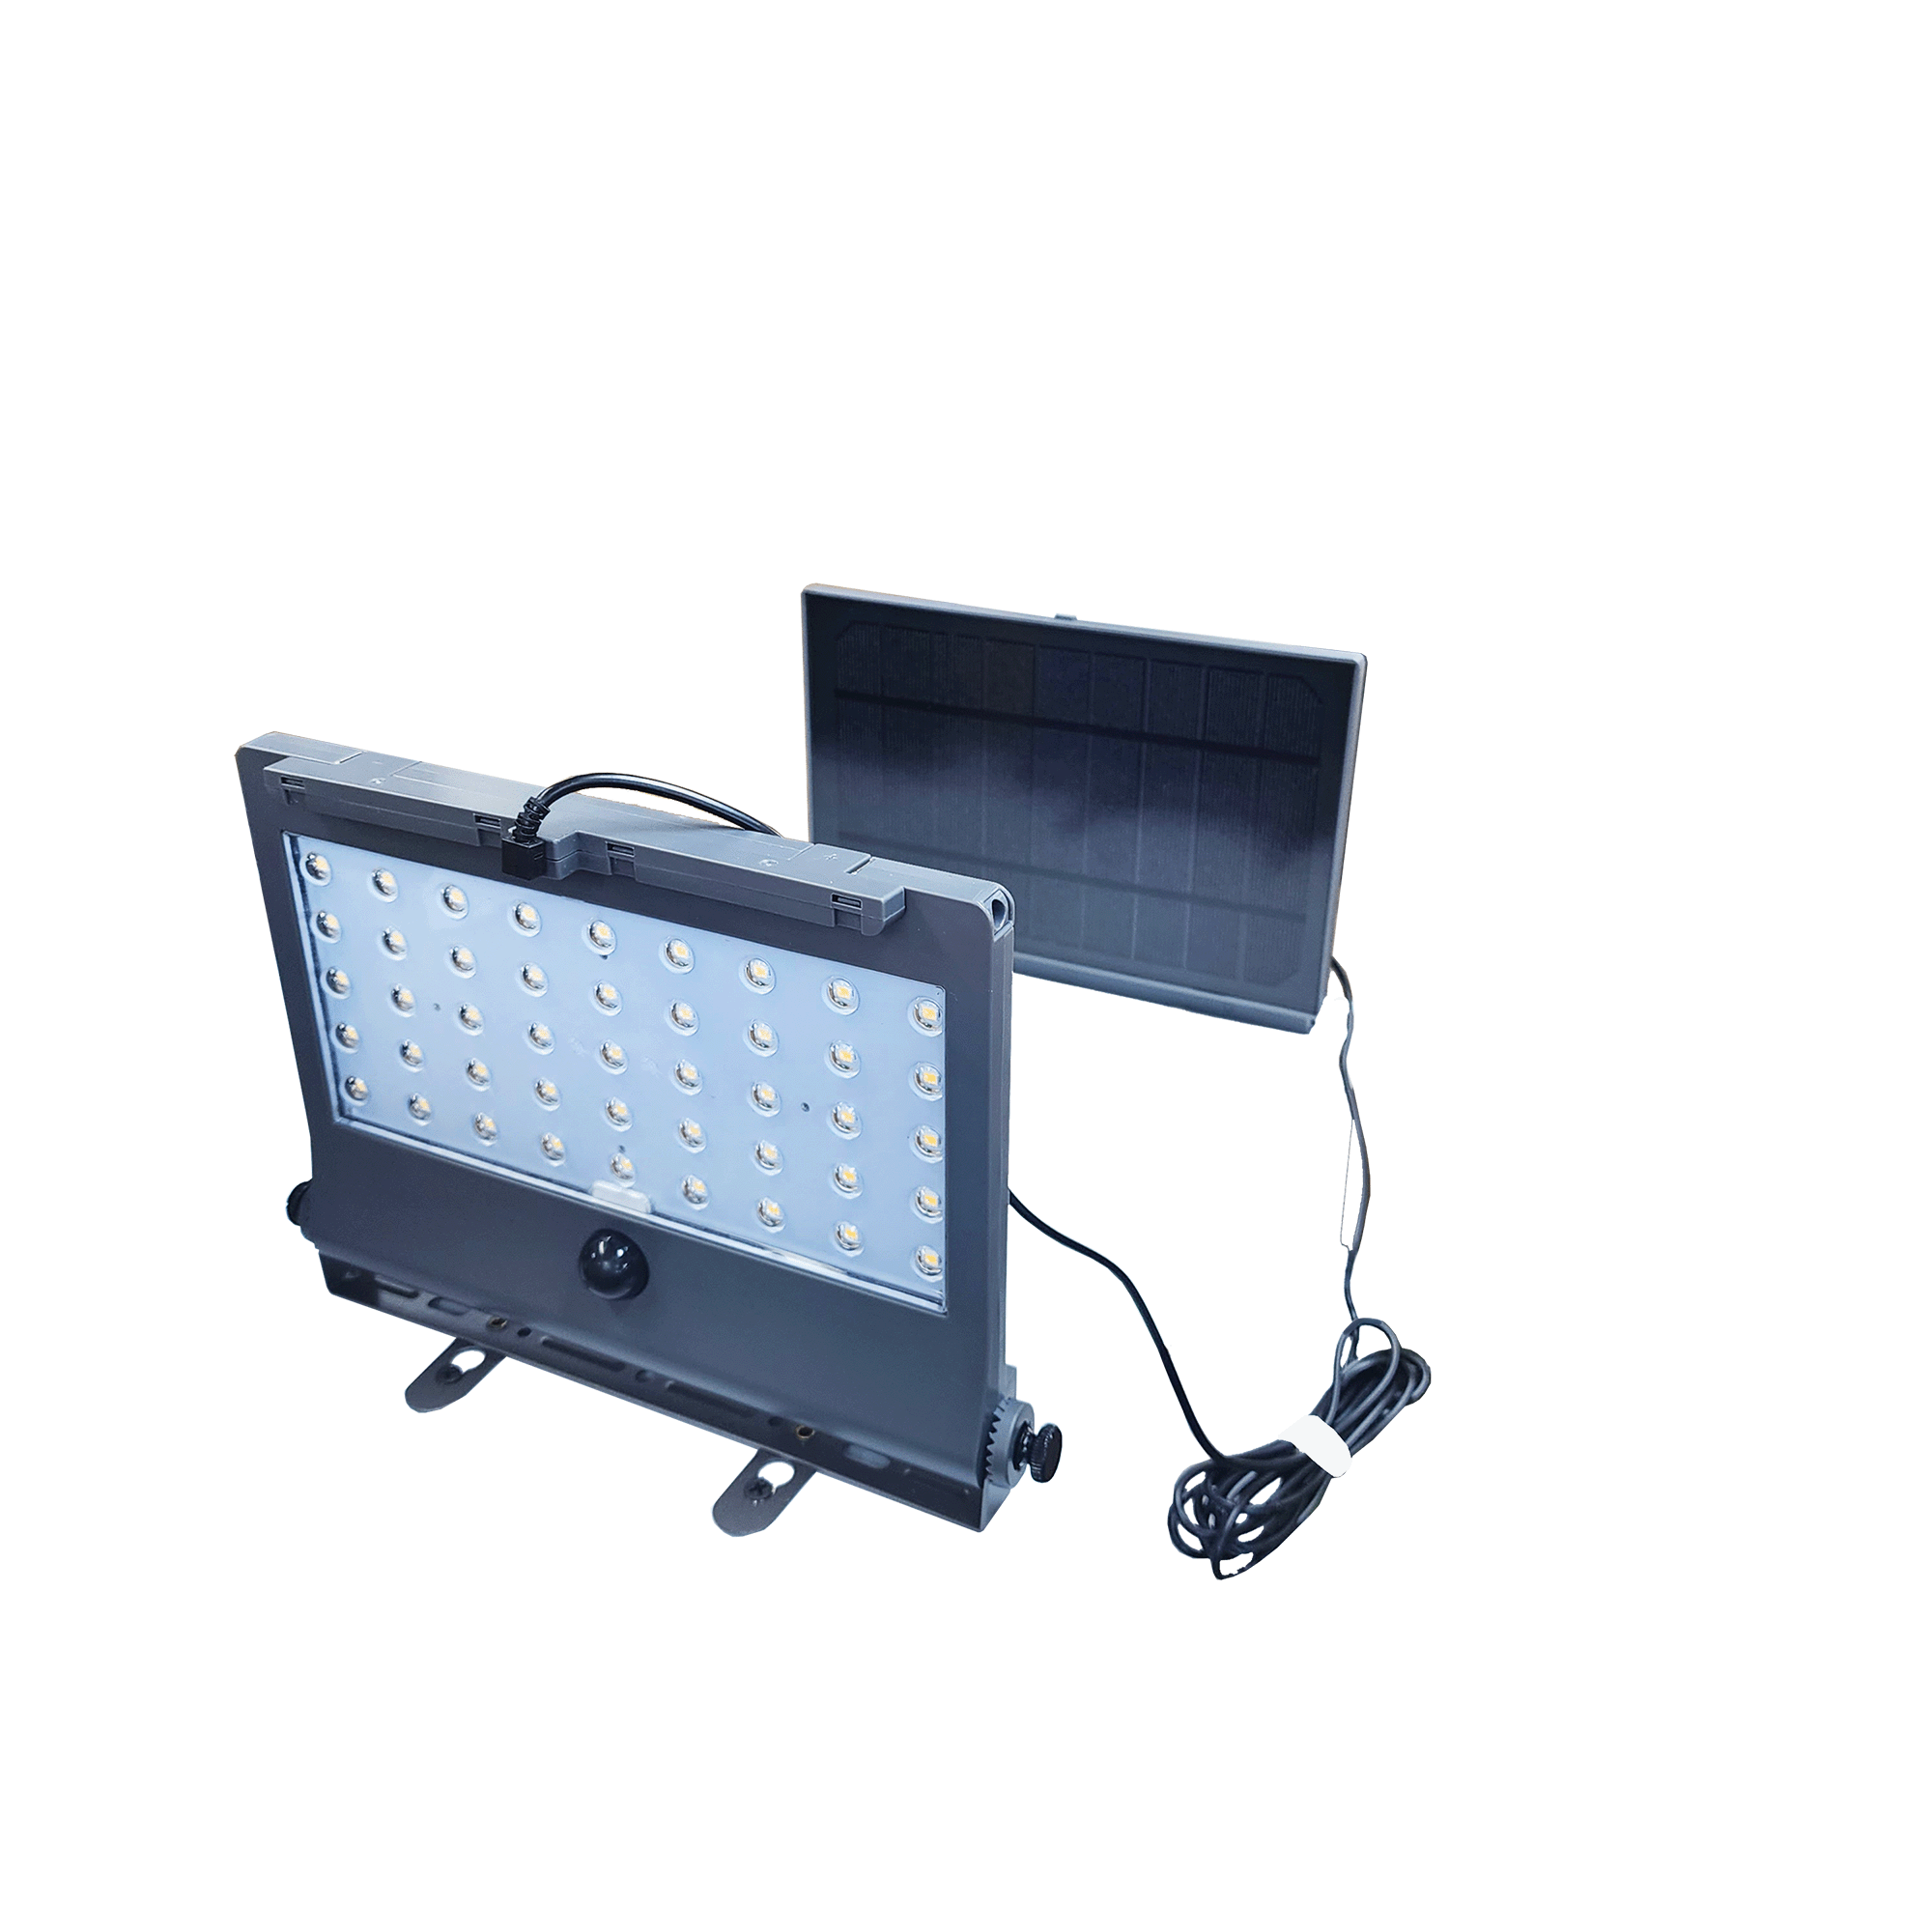 태양광 벽등. 주차장. 계단. 현관 (FESL-52), 패널과 LED 분리형. 차원이 다른 명품 디자인